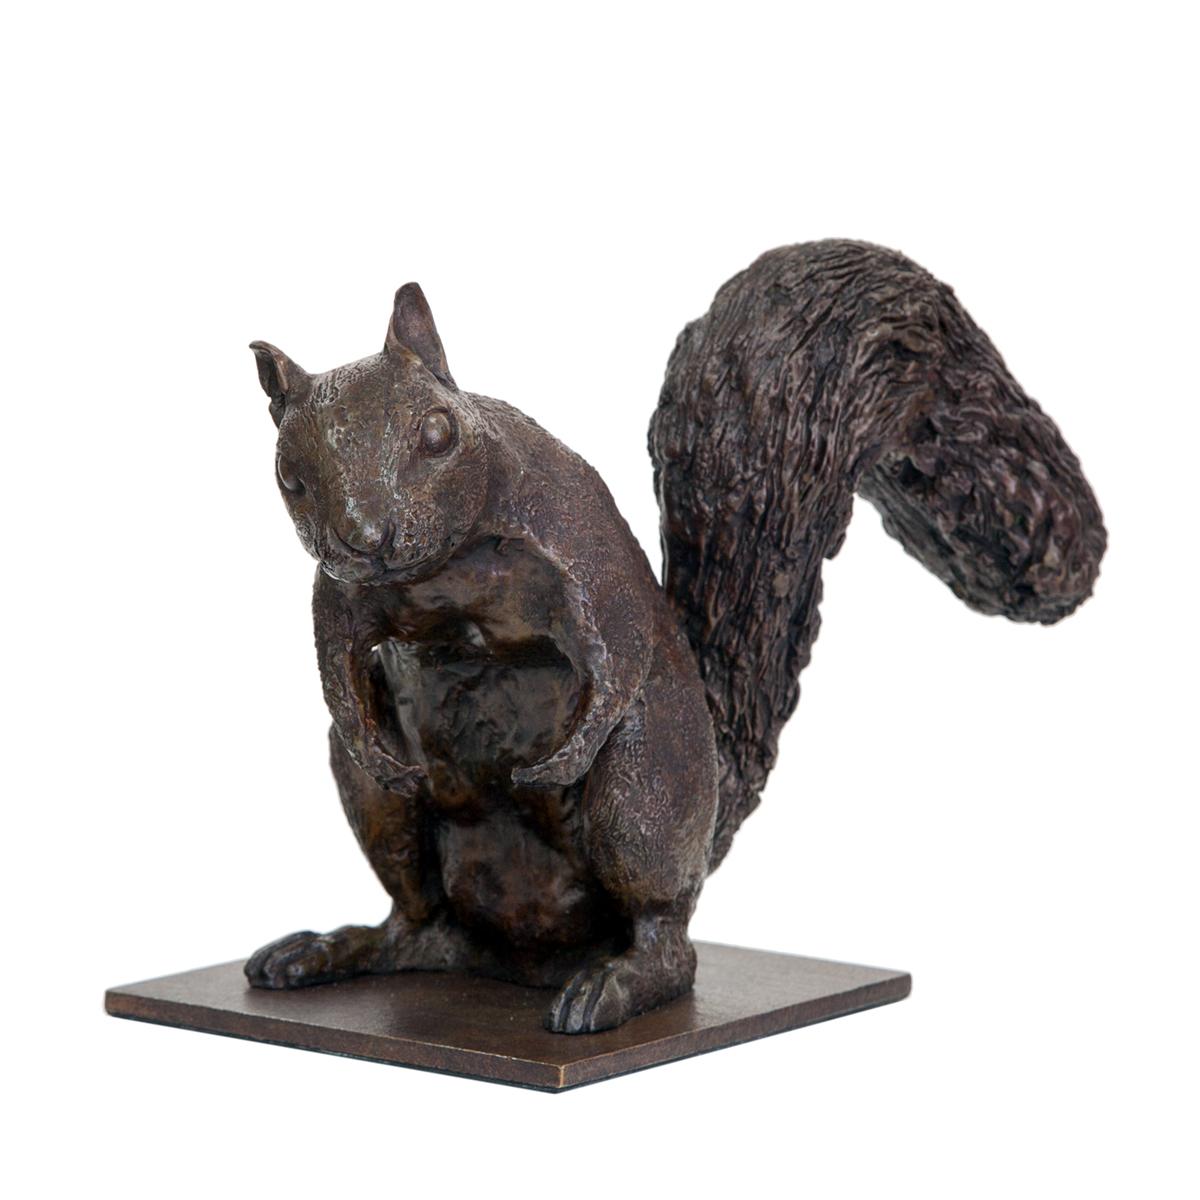 Antonio Da Silva Figurative Sculpture - Squirrel II with Base 